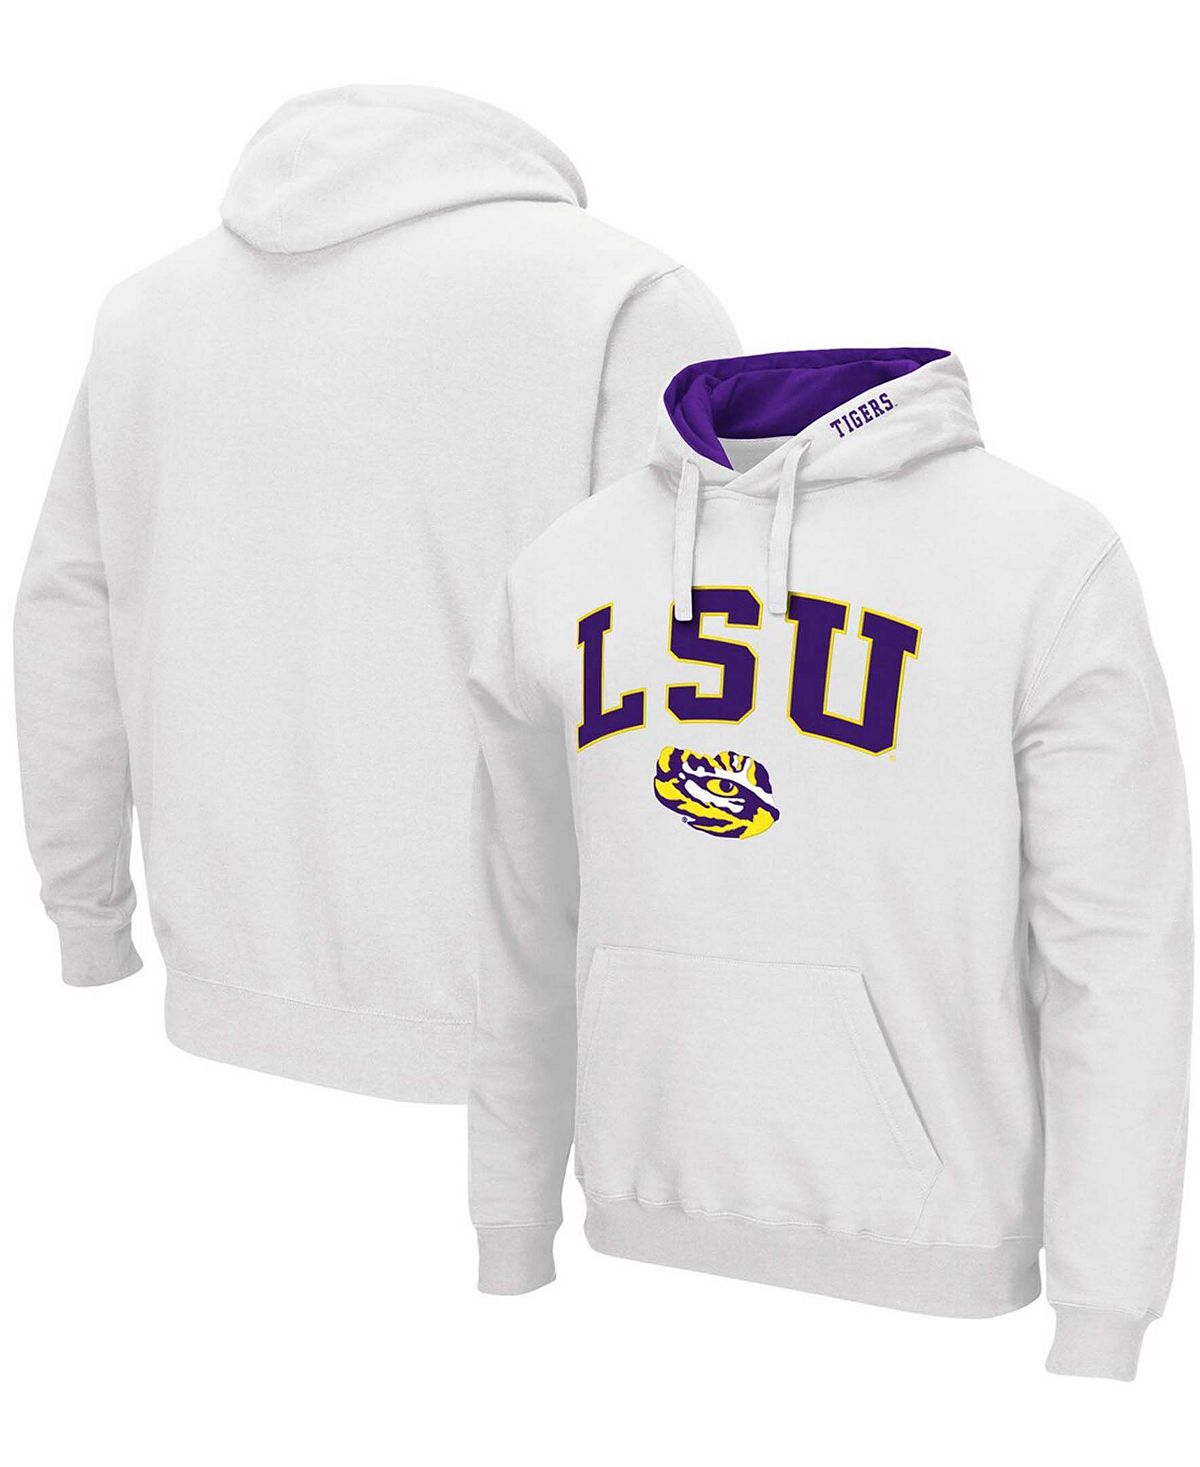 Мужской белый пуловер с капюшоном LSU Tigers Arch Logo 3.0 Colosseum